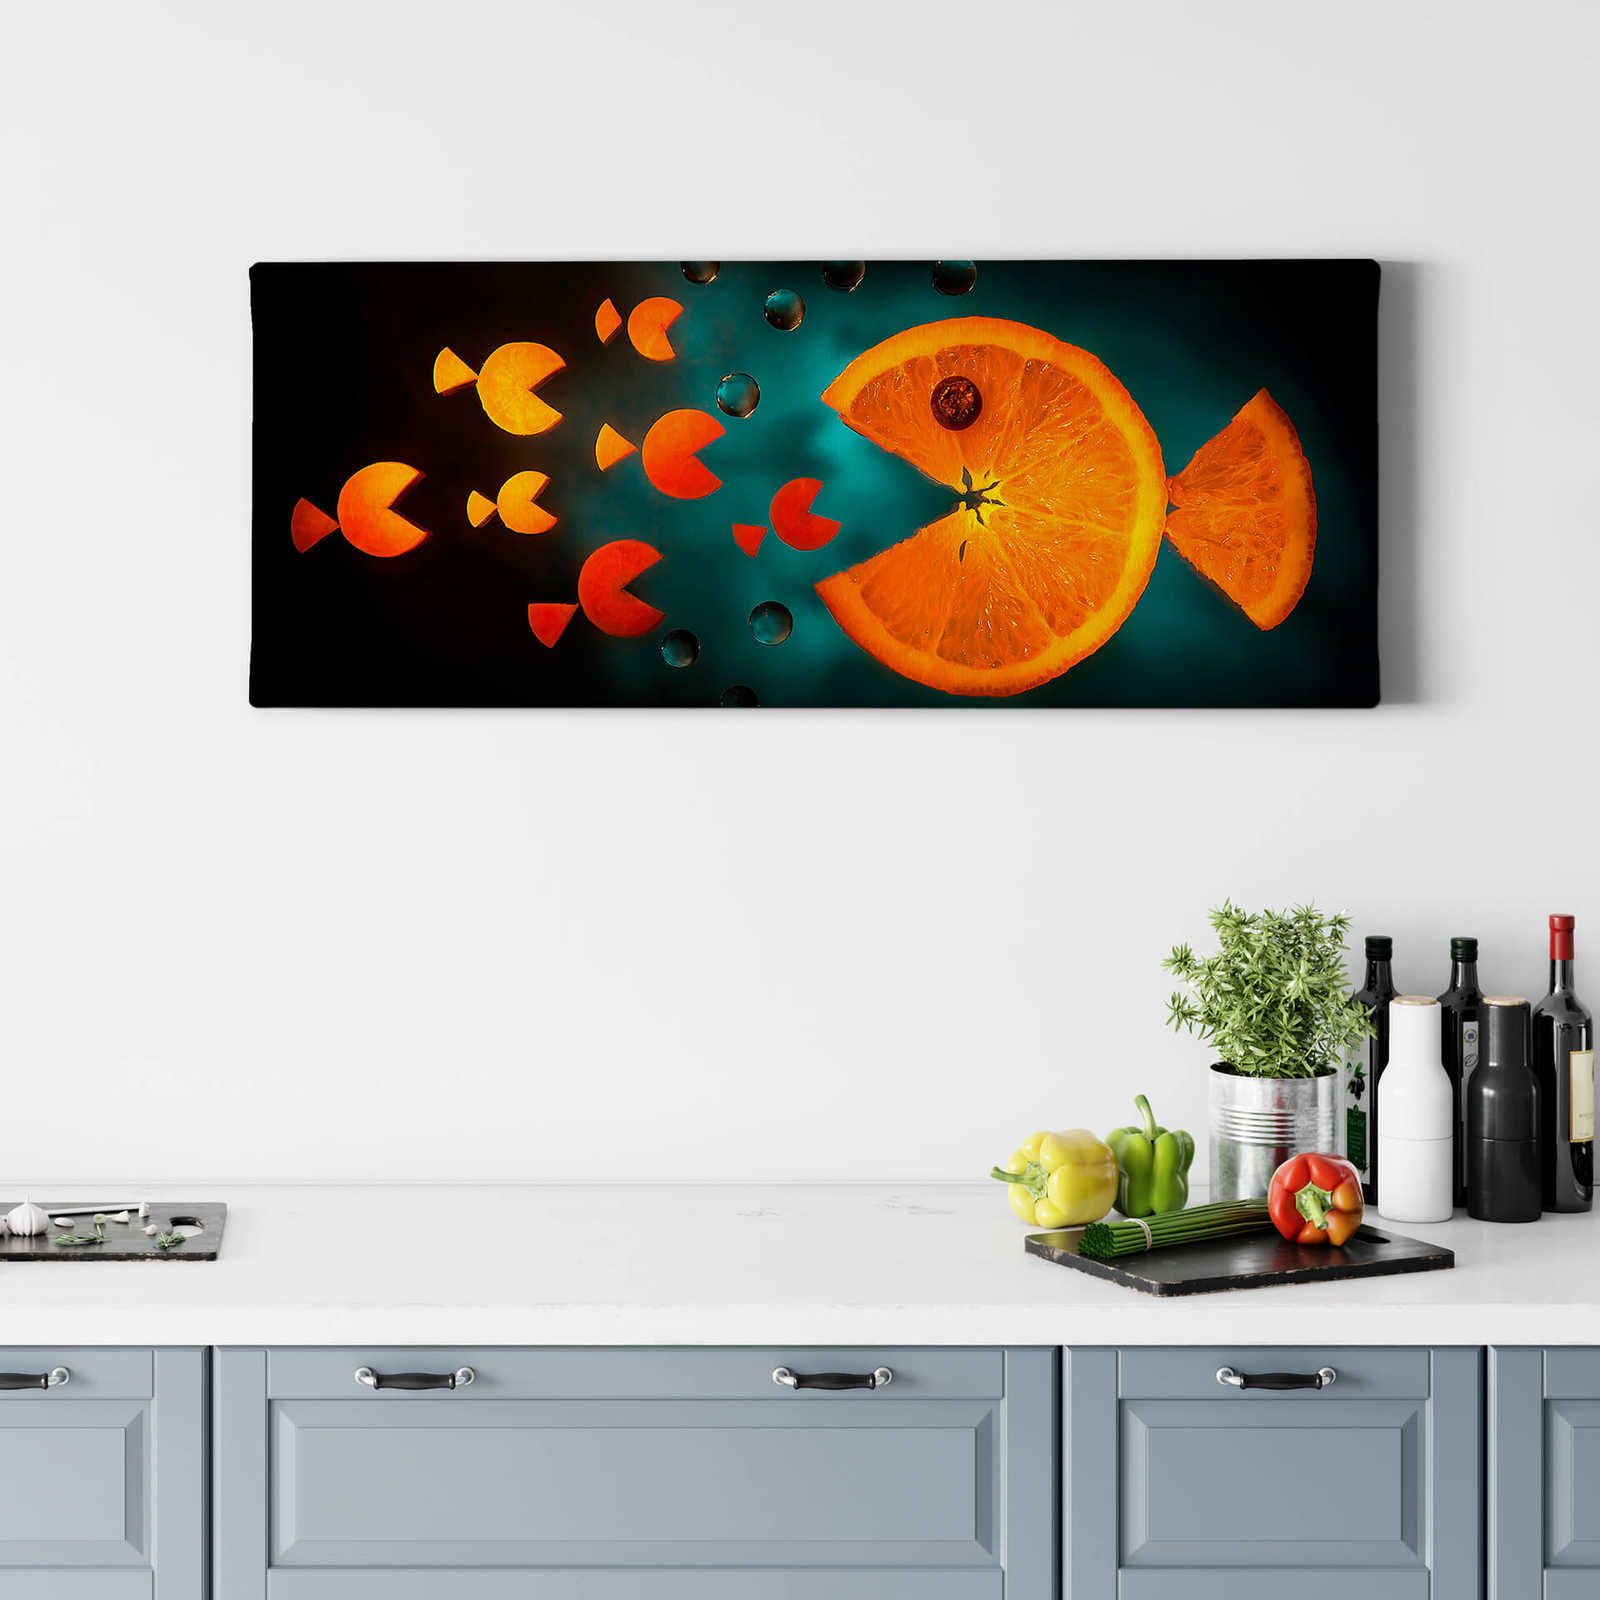             Panoramafoto op canvas Keuken Groenten & Fruit, door laneva - 1.00 m x 0.40 m
        